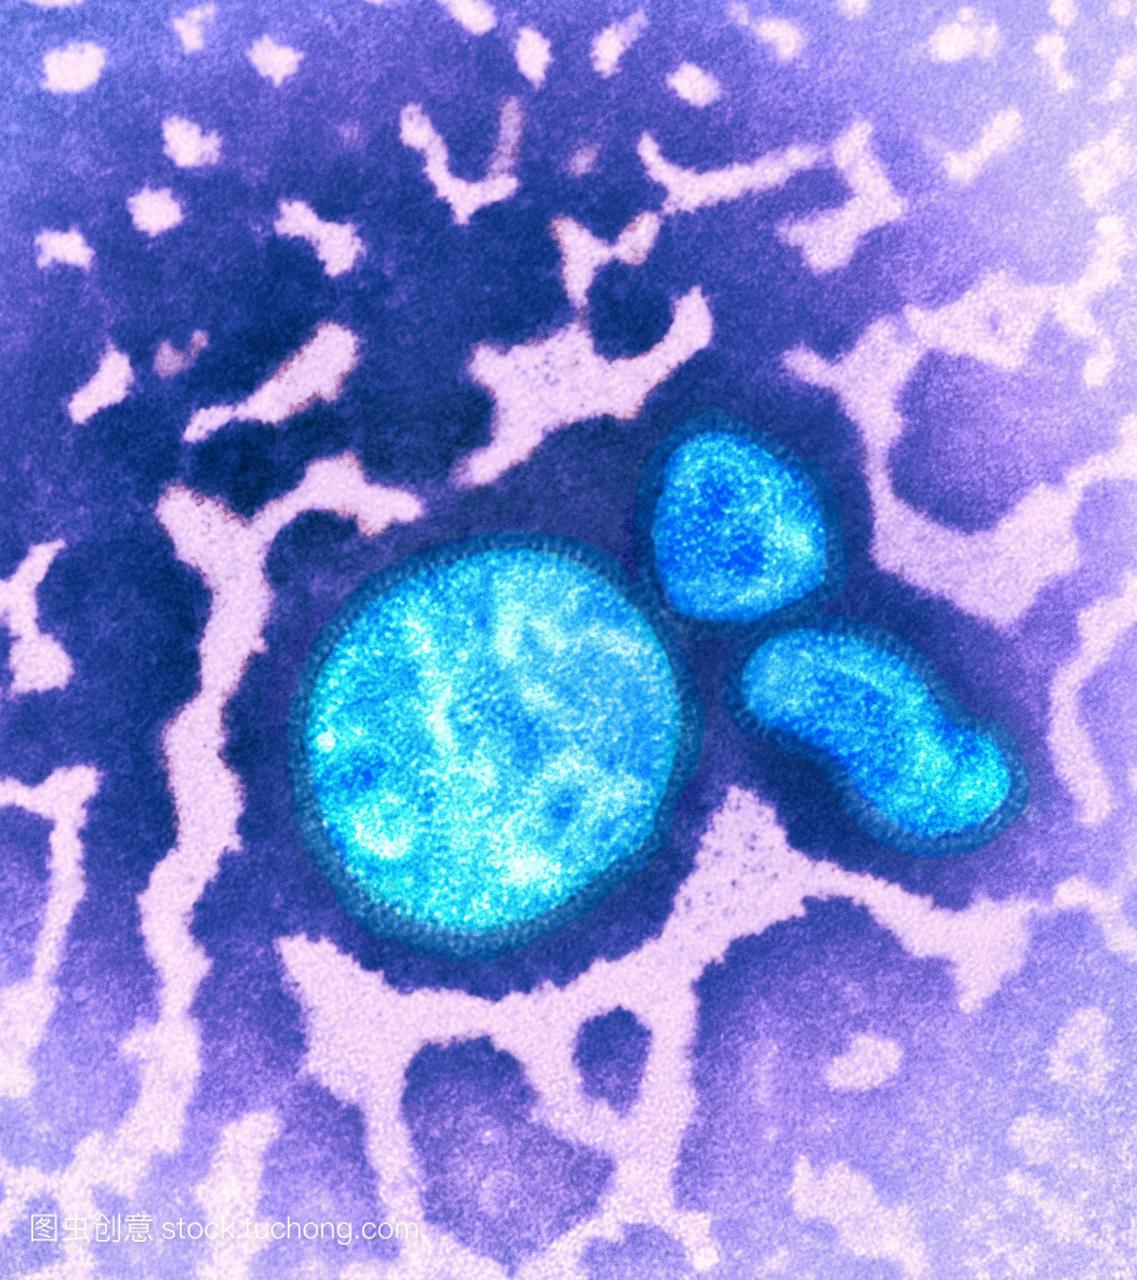 h1n1猪流感病毒。从2009年4月起爆发的猪流感